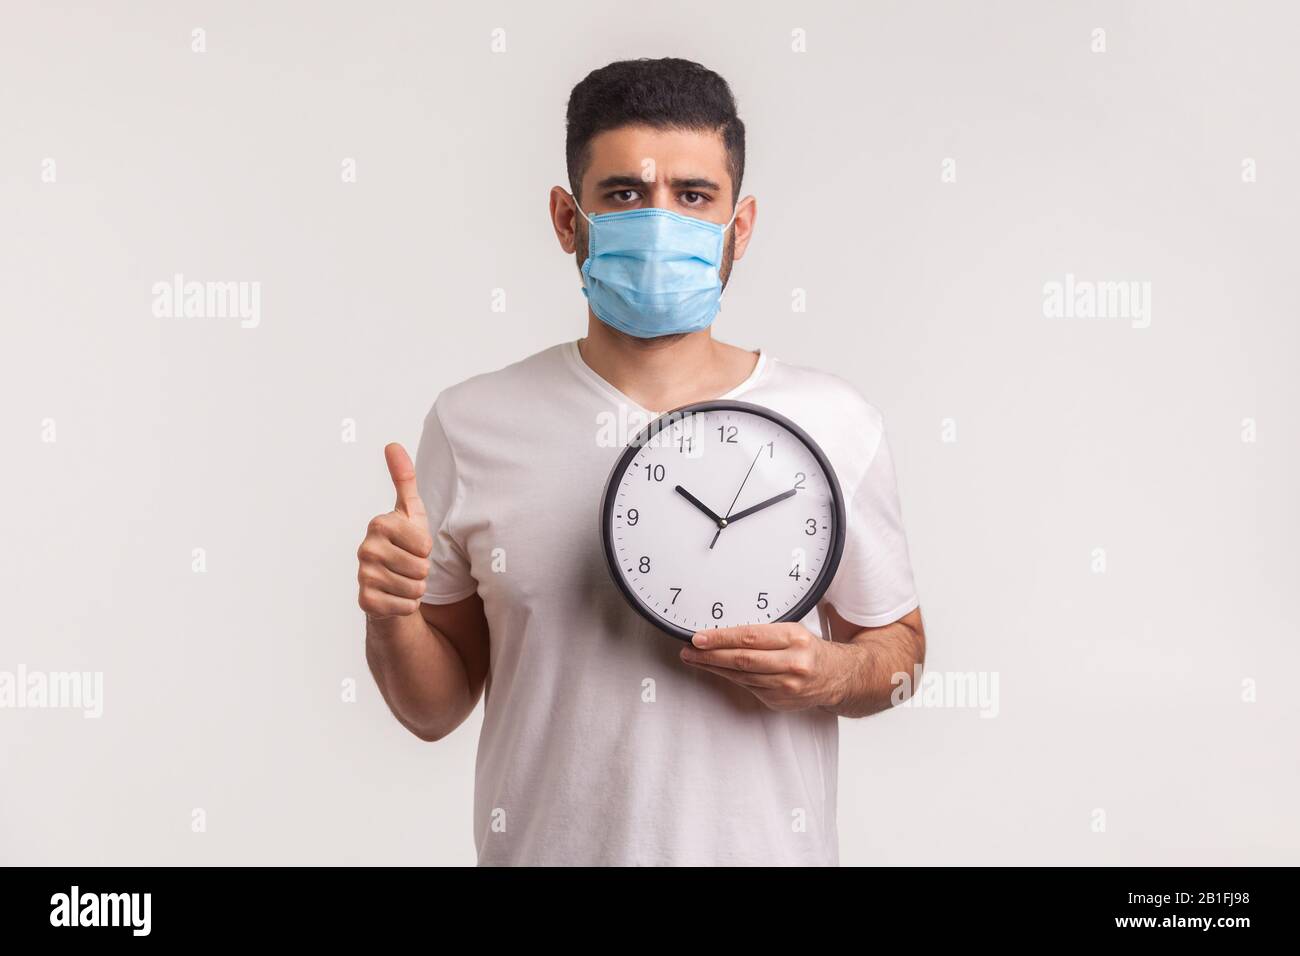 Tempo di combattere il coronavirus. Uomo in maschera igienica protettiva che tiene orologio, avvertimento di nuova epidemia di virus, quarantena e rischio durante l'incubazione perio Foto Stock